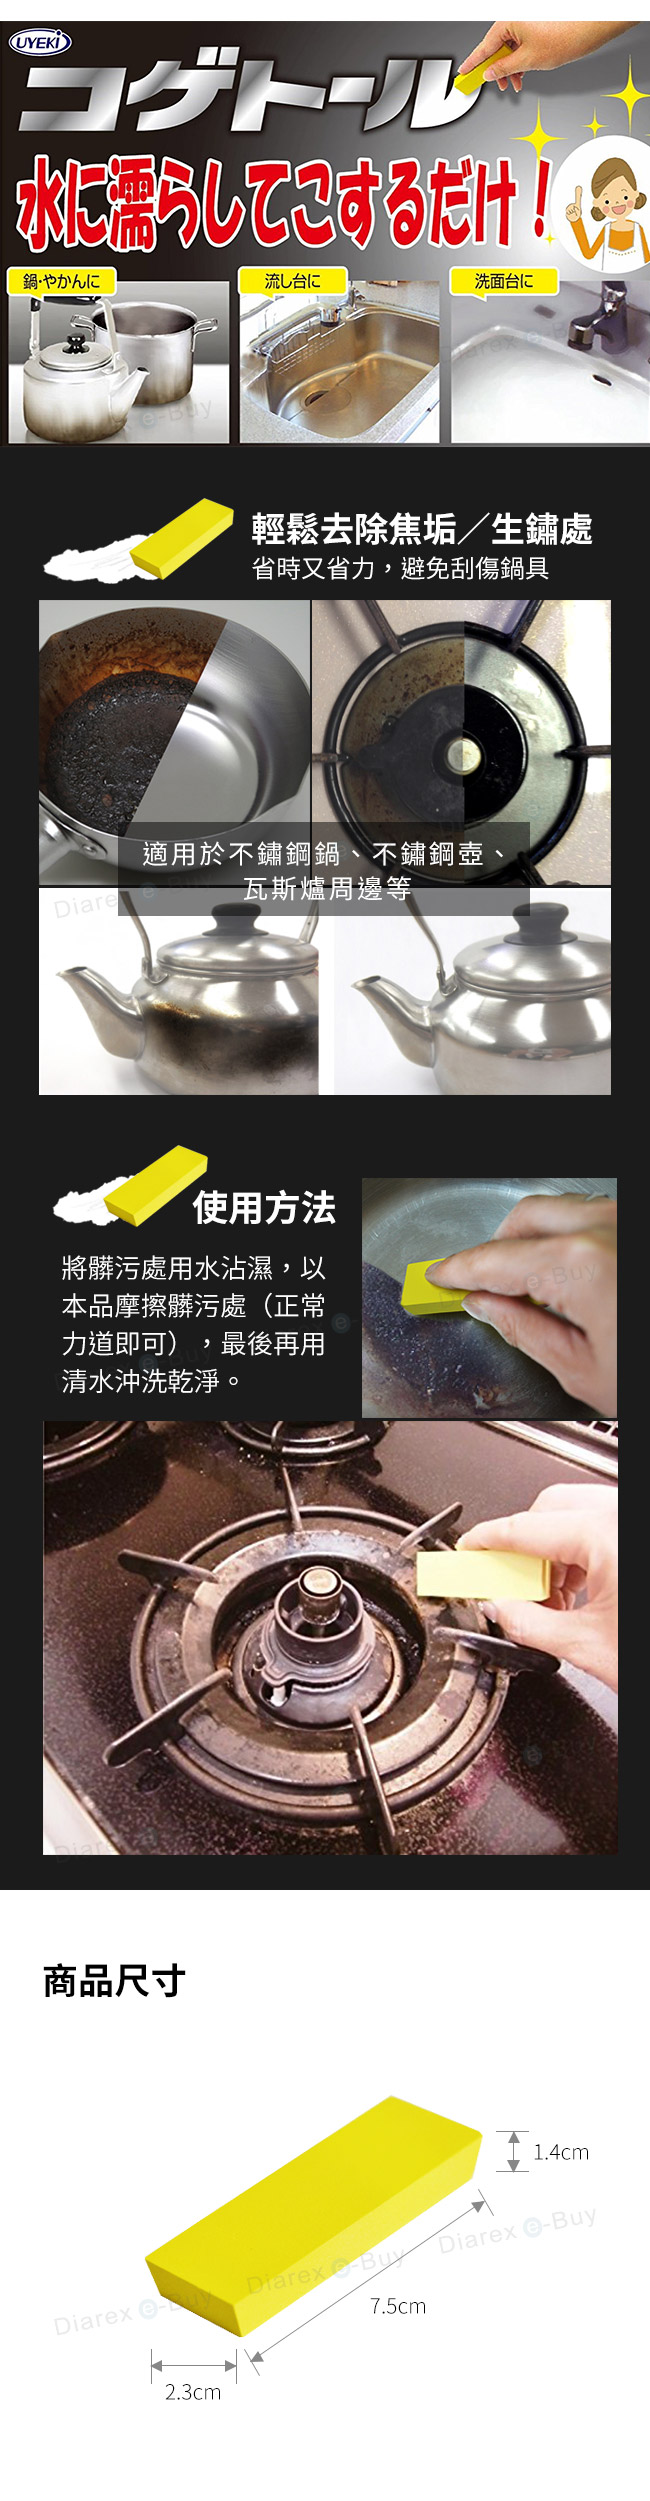 日本植木UYEKI Kogetor鍋子/鍋底燒焦處專用清潔擦